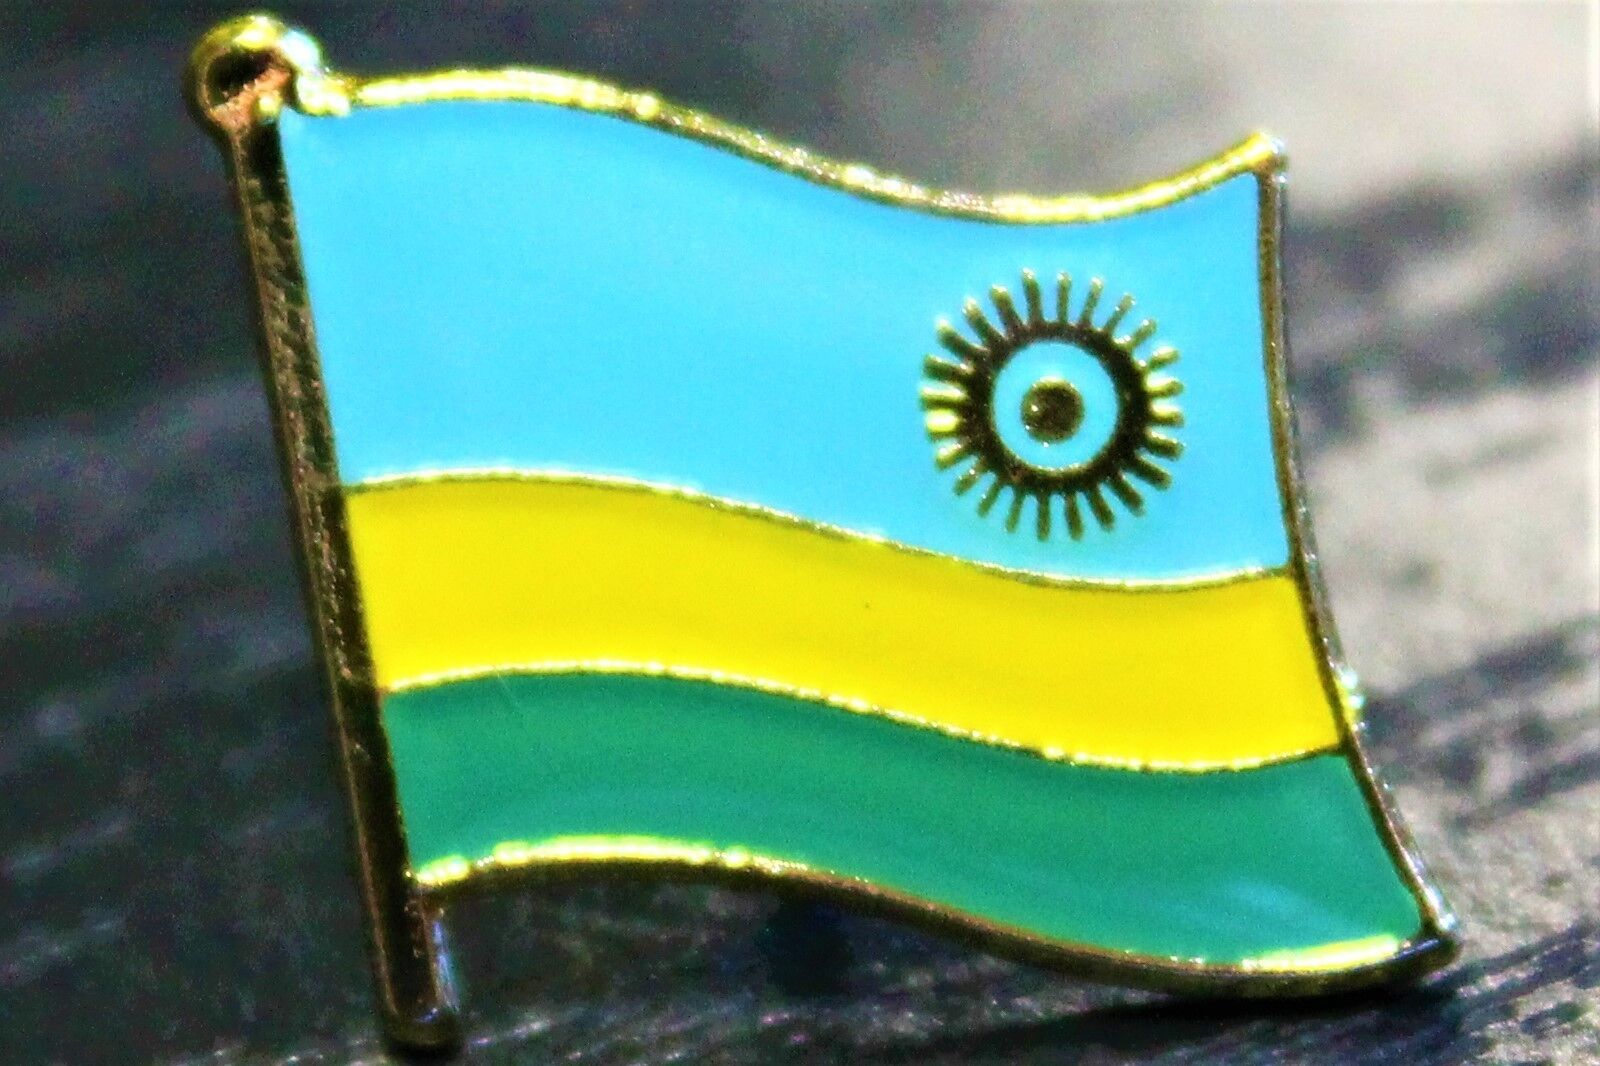 RWANDA Rwandan Metal Flag Lapel Pin Badge *NEW*MIX & MATCH BUY 3 GET 2 FREE